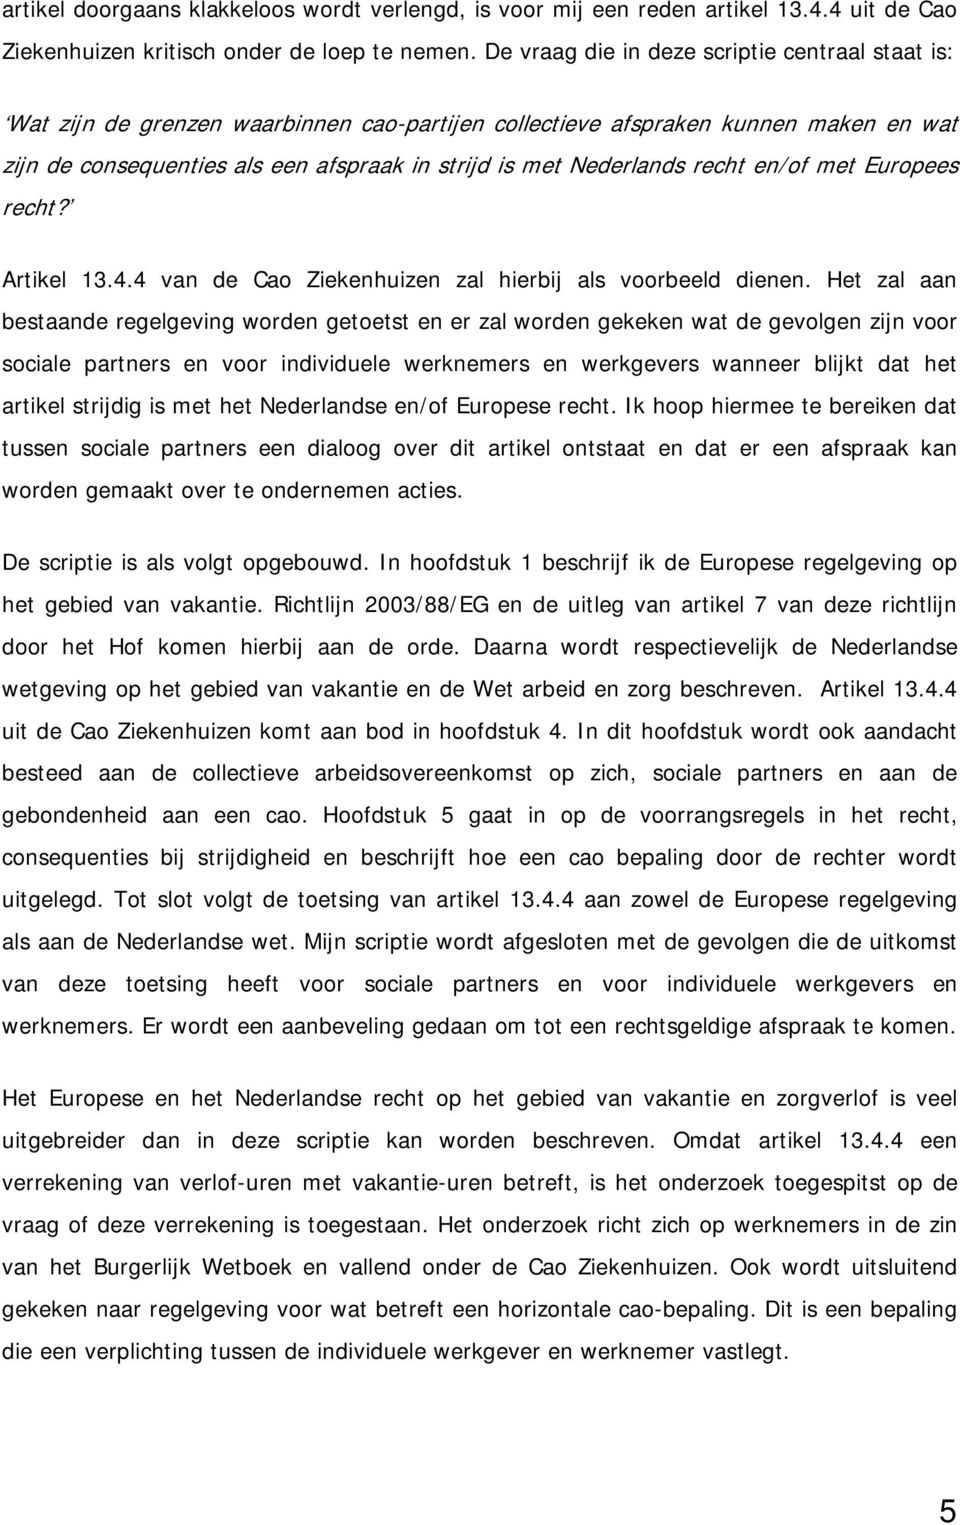 Nederlands recht en/of met Europees recht? Artikel 13.4.4 van de Cao Ziekenhuizen zal hierbij als voorbeeld dienen.